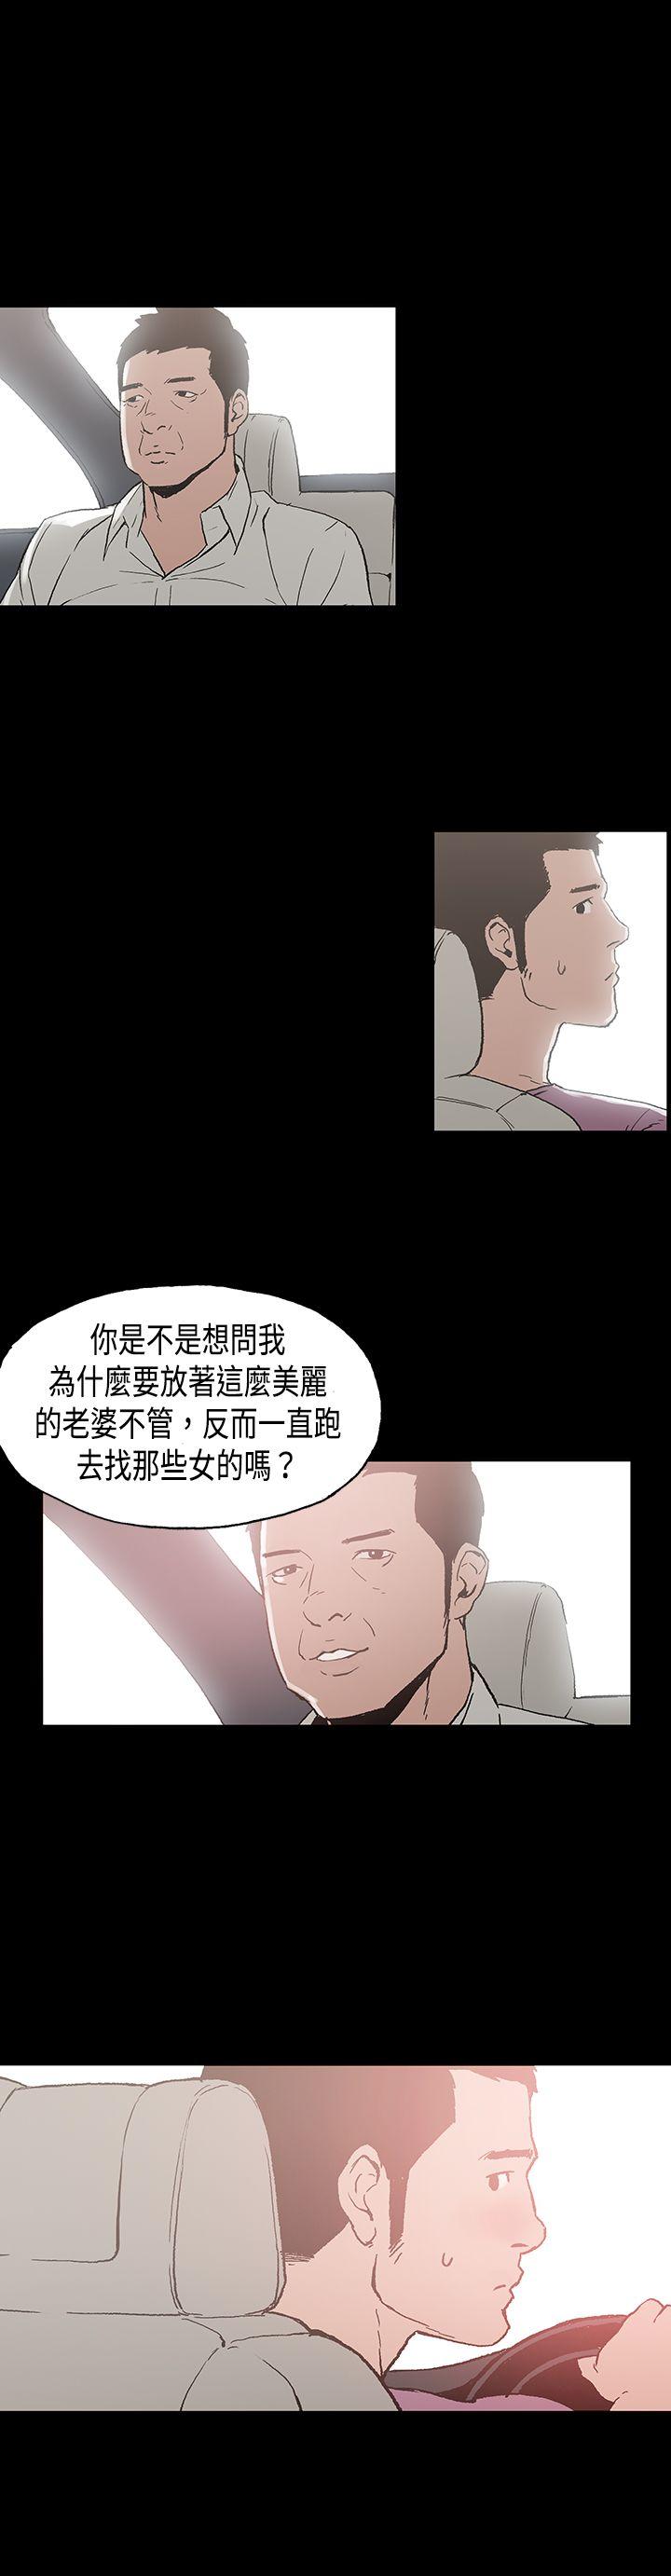 韩国污漫画 醜聞第二季 第8话江理事的过去 11